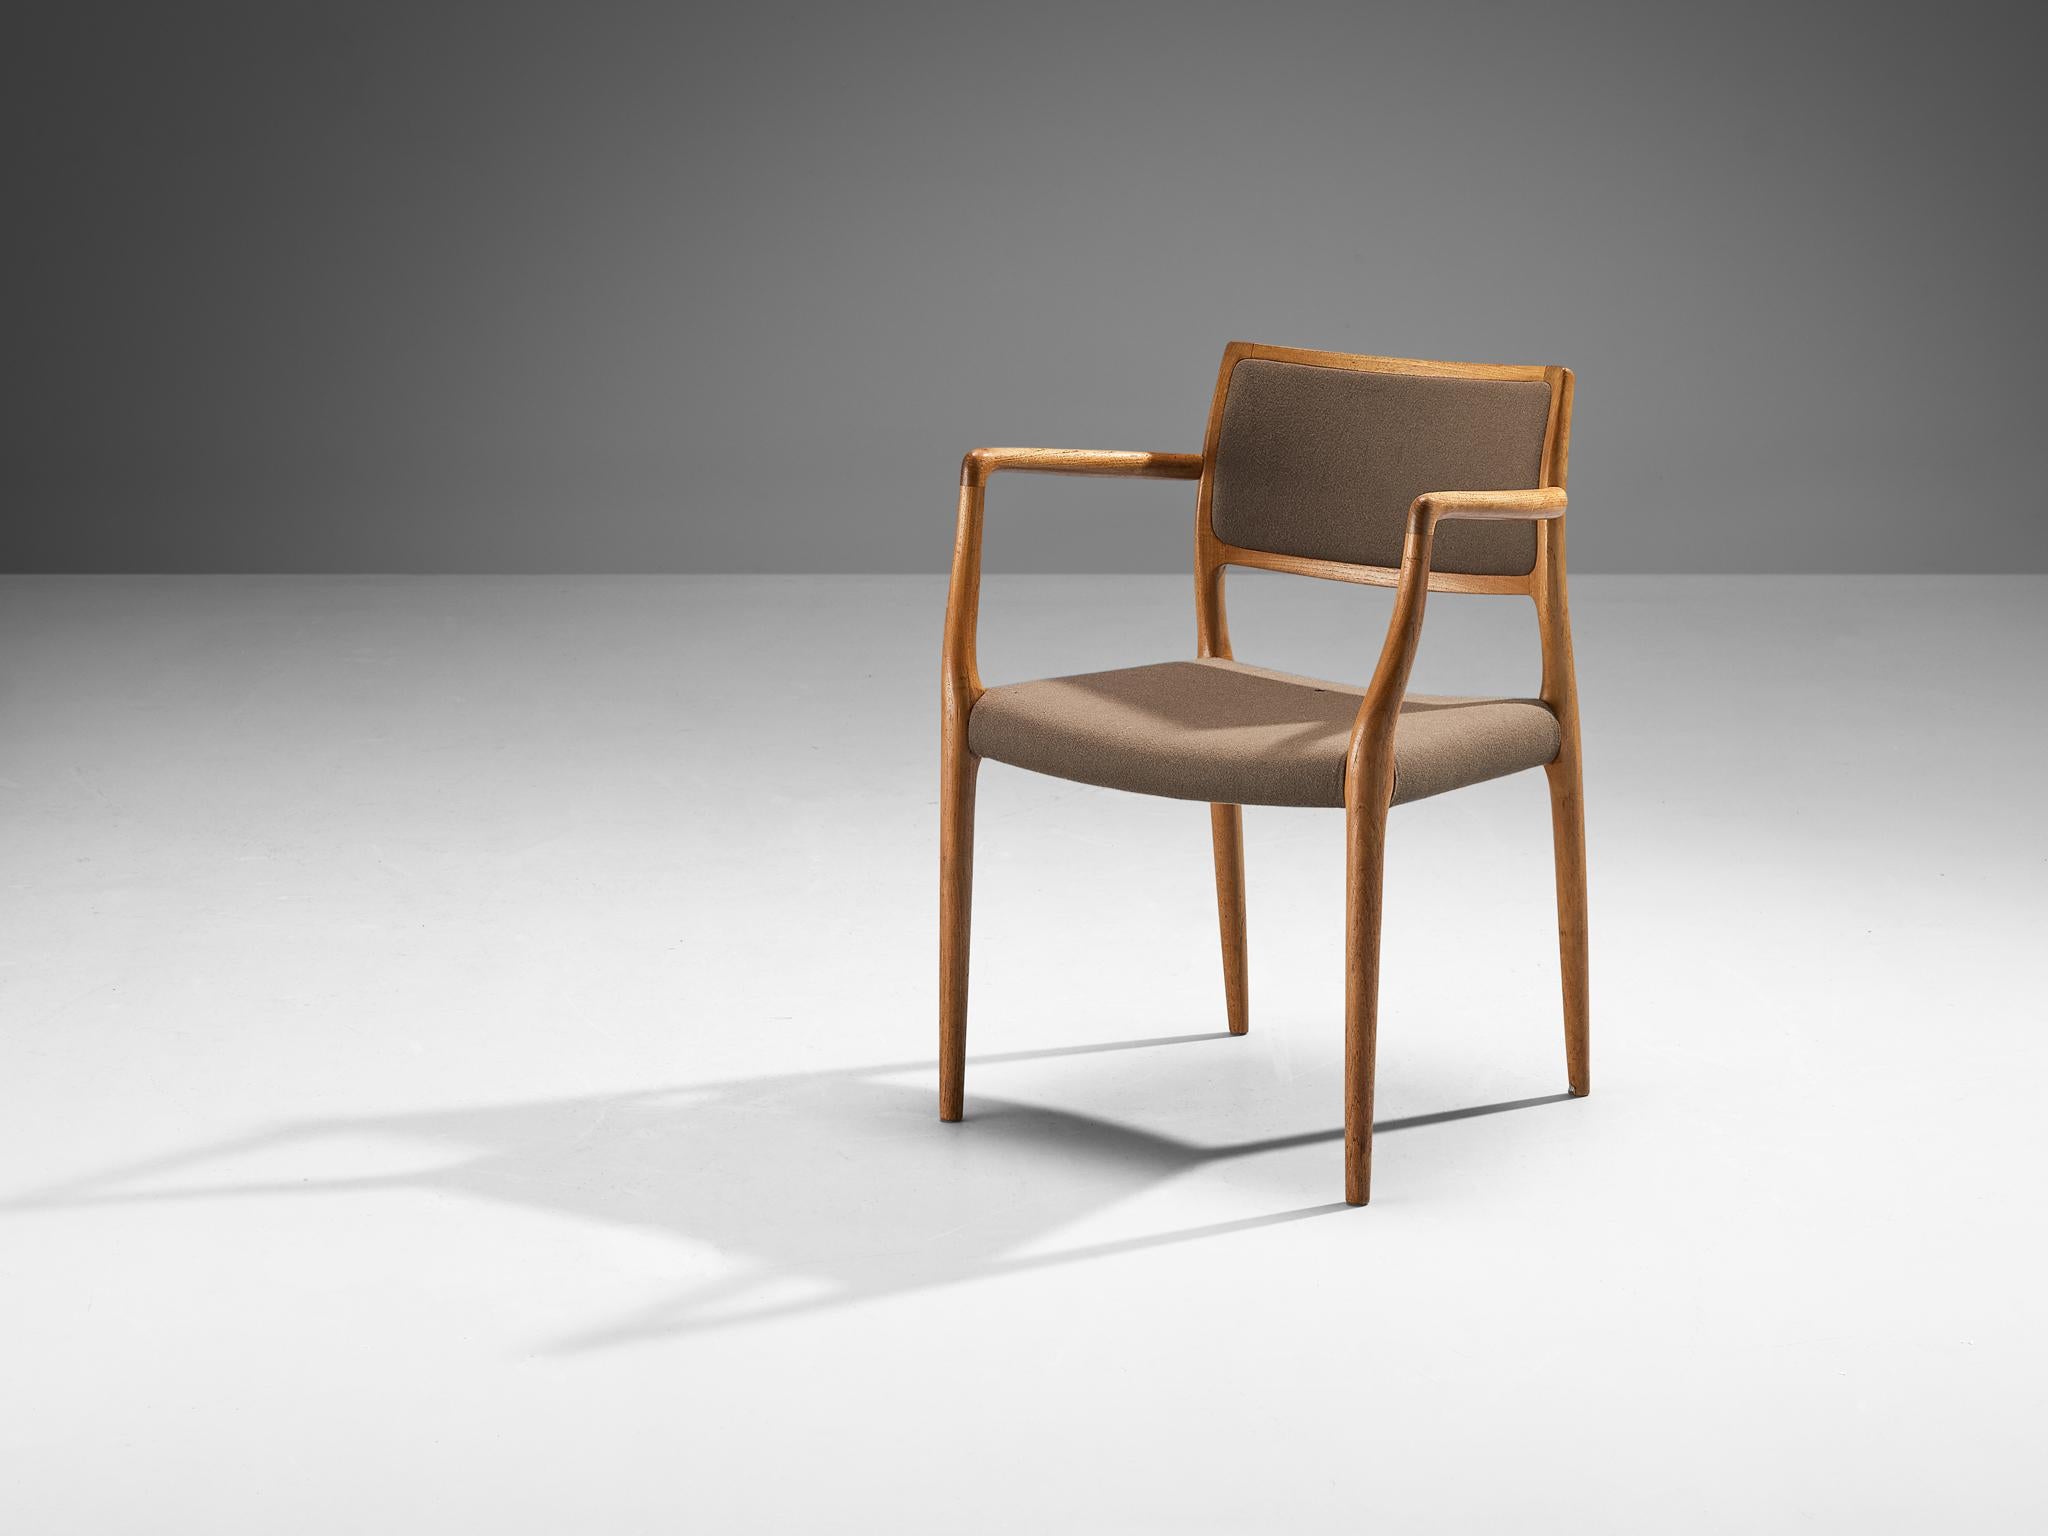 Niels Otto Møller pour J.L.A. Møllers Møbelfabrik, fauteuil modèle 56, teck, laine, Danemark, 1954. 
 
Cette chaise présente des lignes subtiles et de belles courbes dans le travail du bois. Dans les raccords très raffinés du bois, on peut voir le